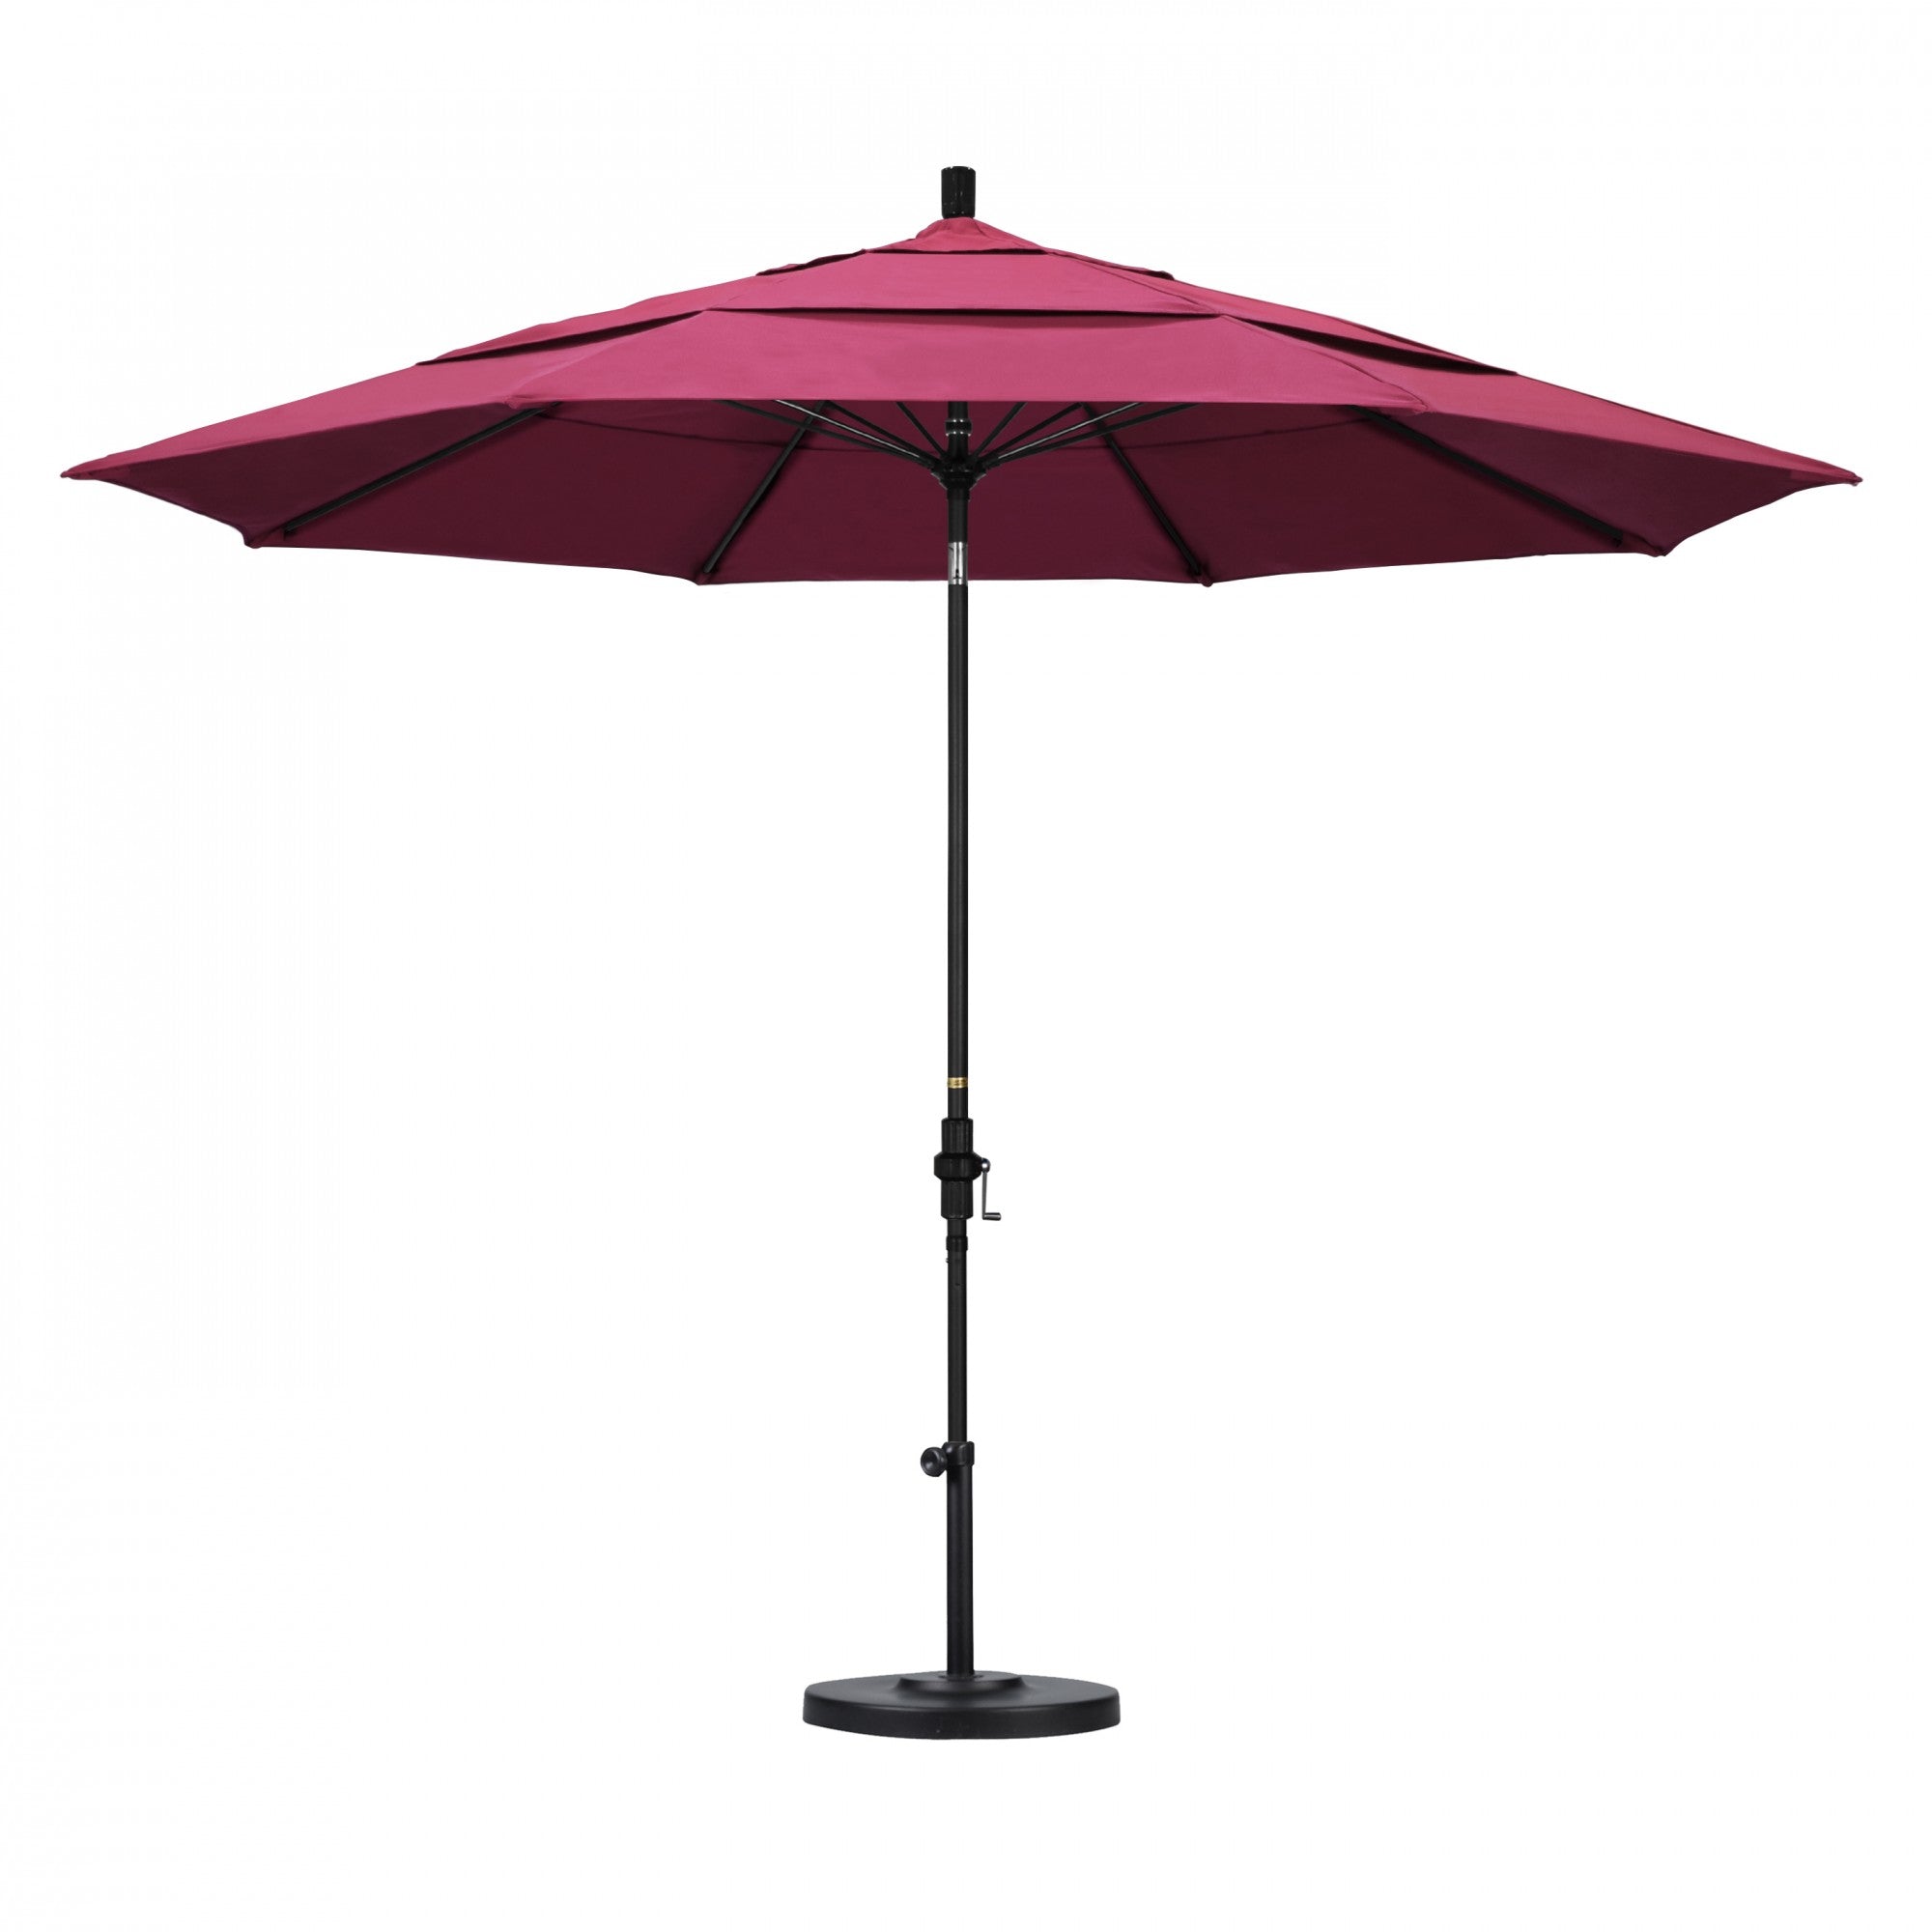 California Umbrella - 11' - Patio Umbrella Umbrella - Aluminum Pole - Hot Pink - Sunbrella  - GSCUF118705-5462-DWV